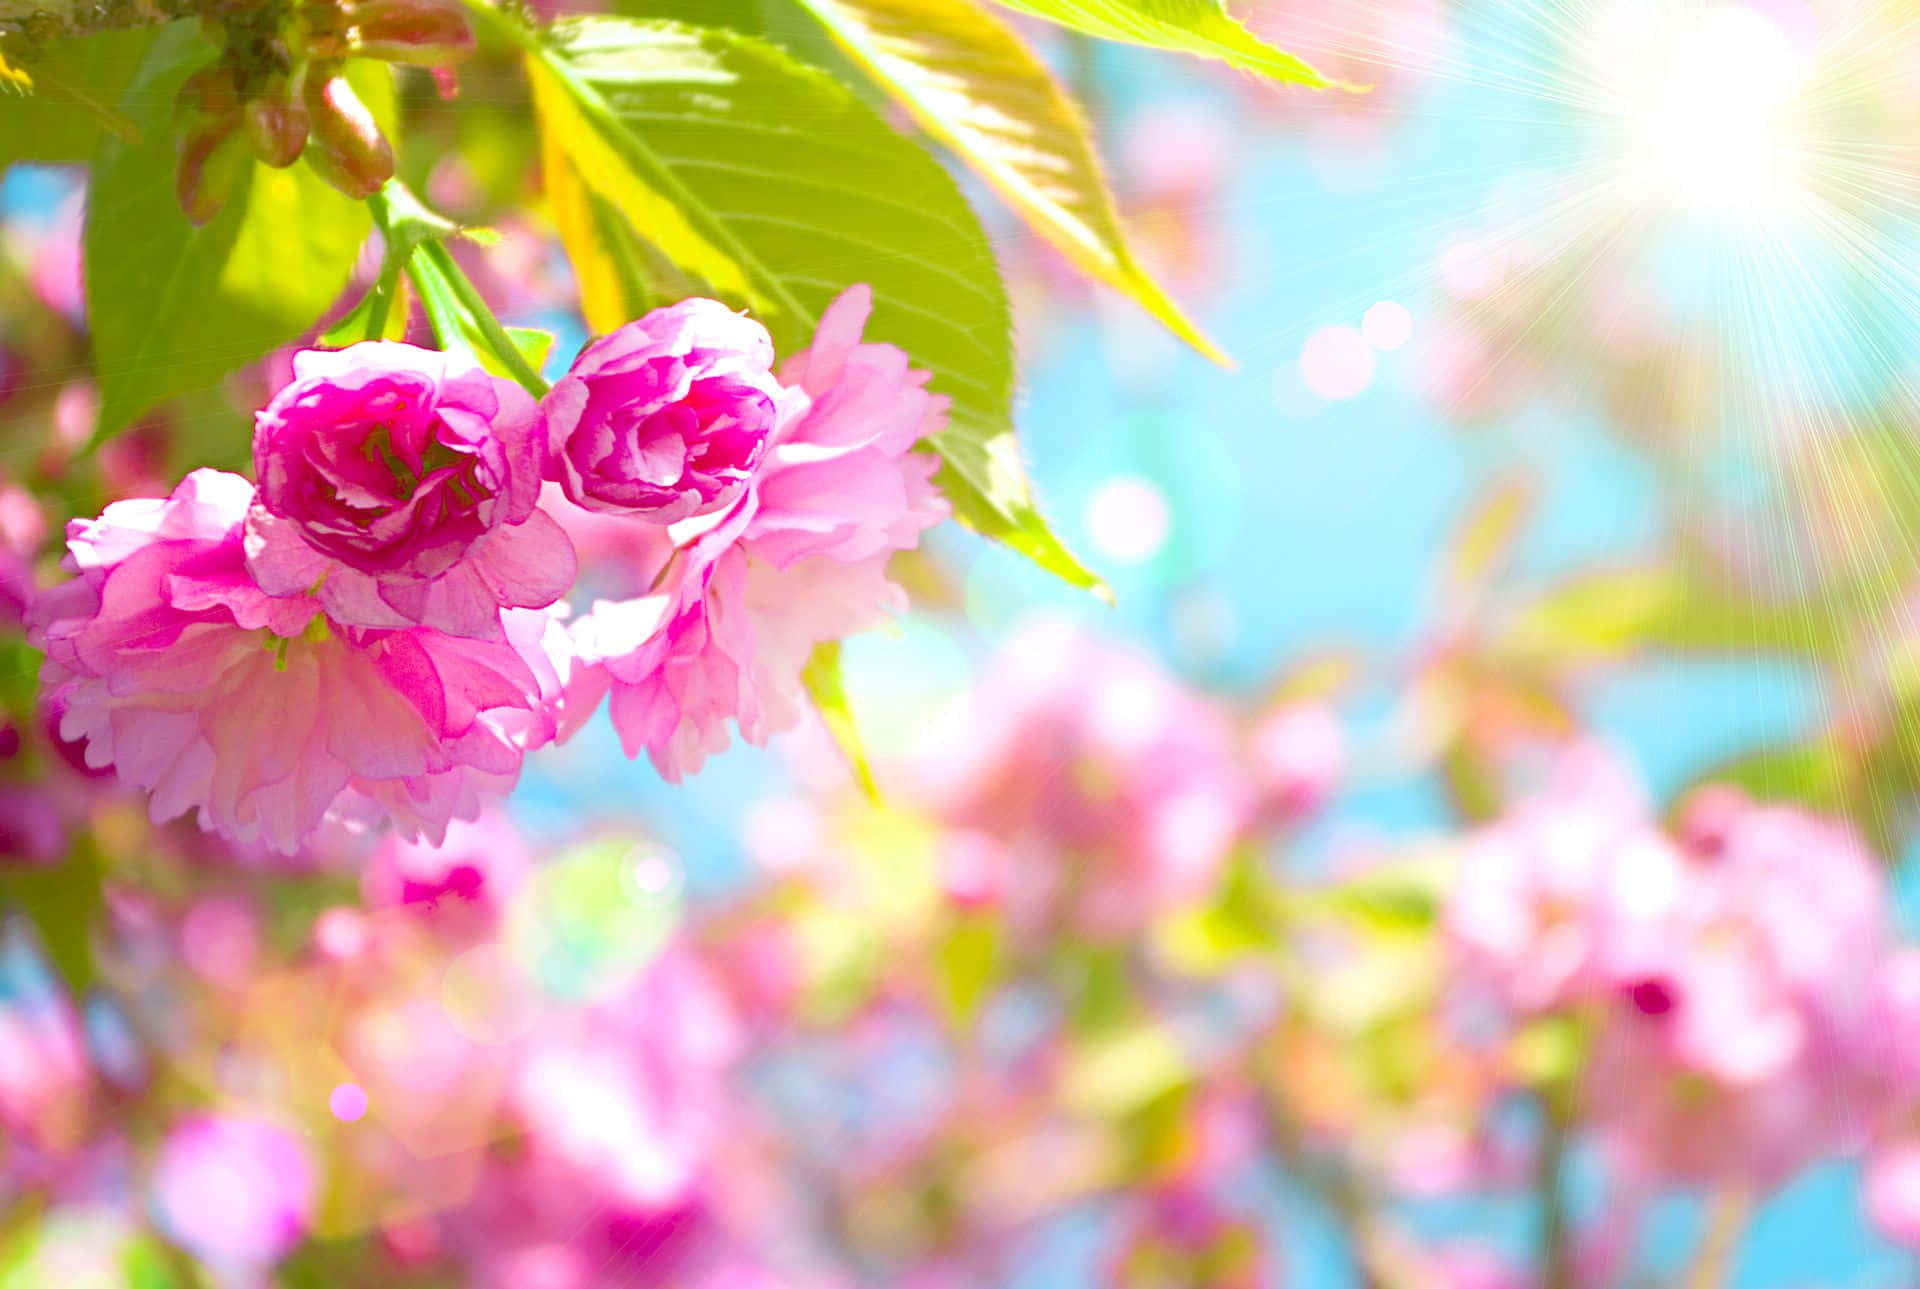 Caption: Spring Sunshine in the Vibrant Garden Wallpaper